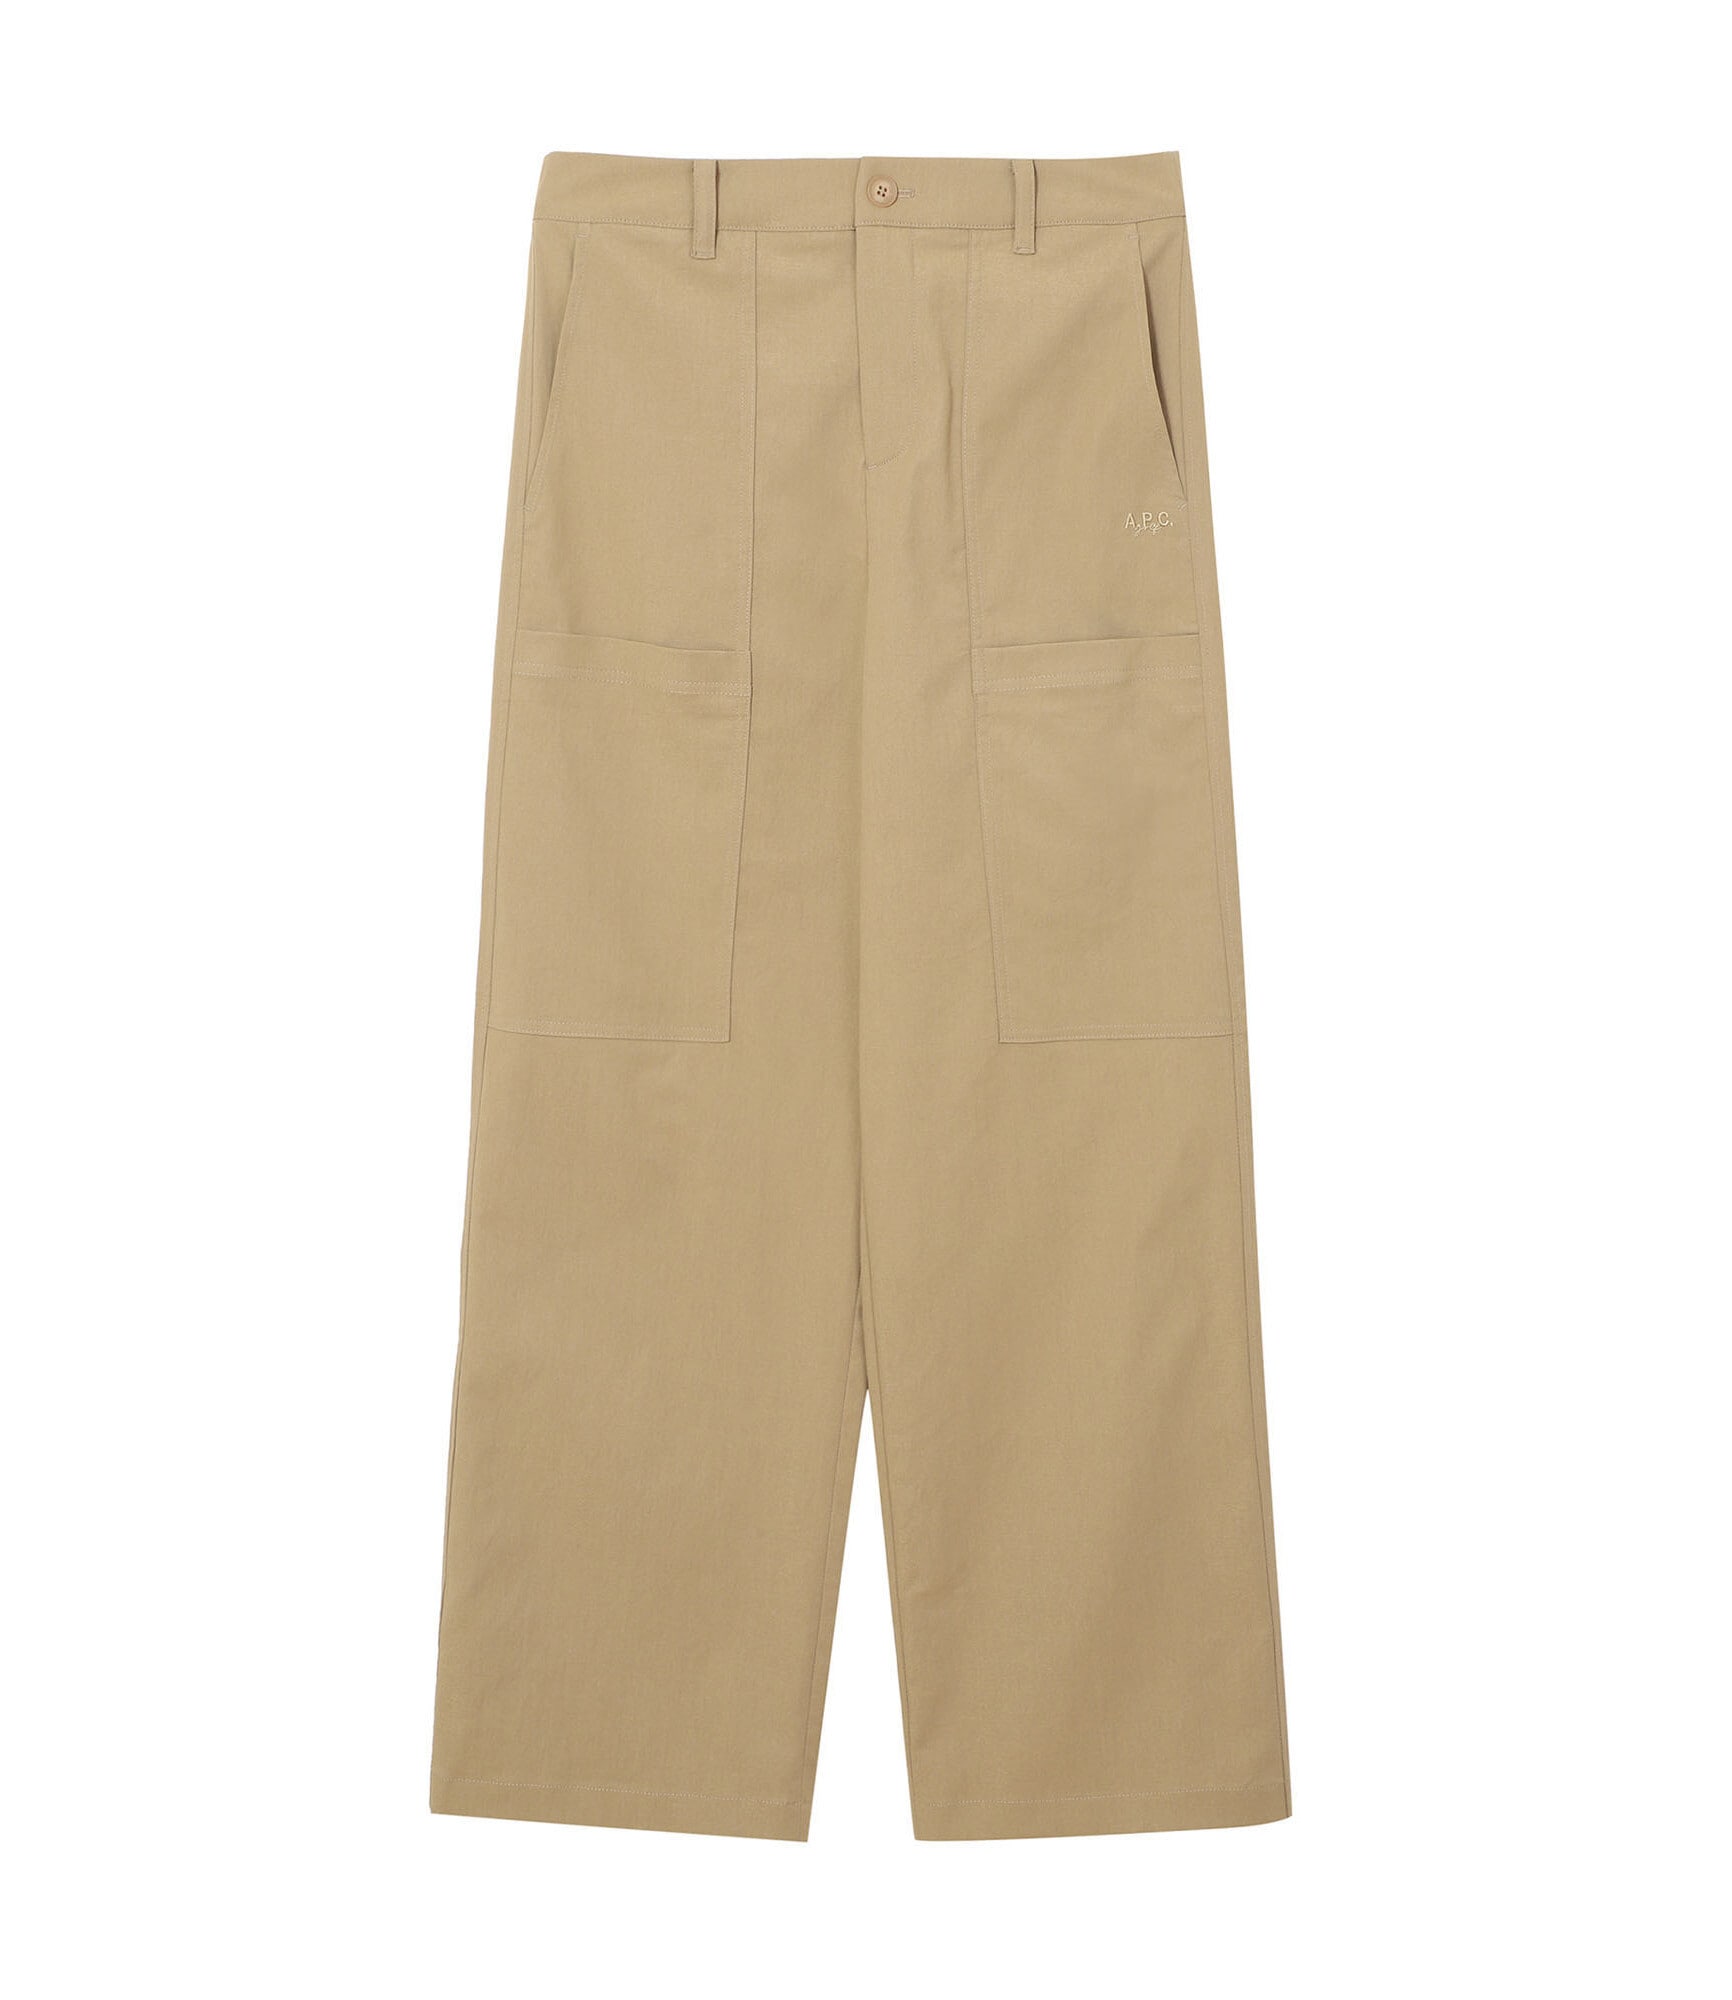 Pantalons / Shorts